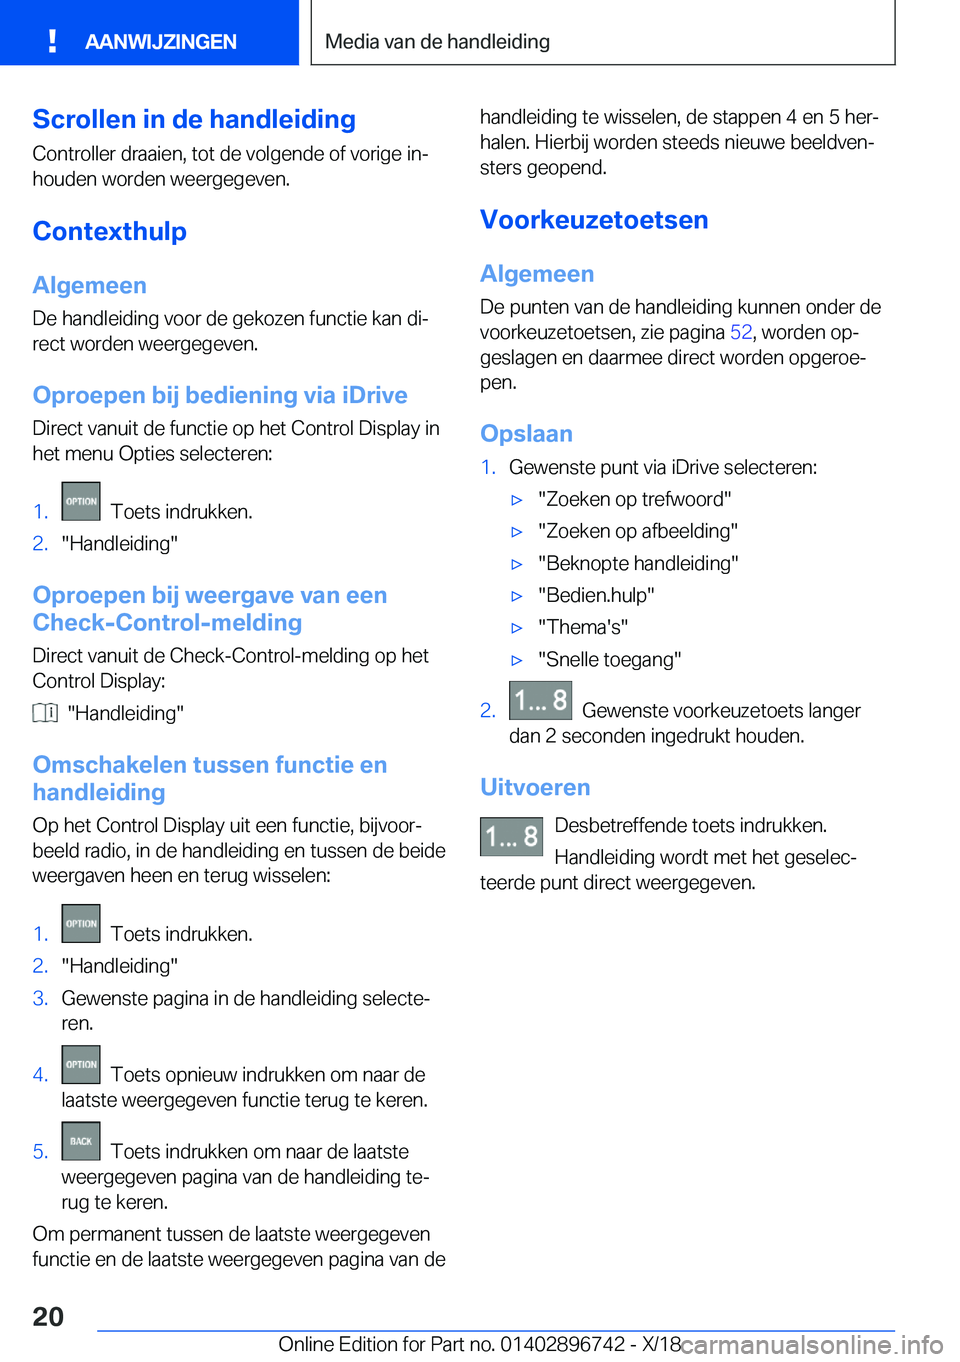 BMW X5 2019  Instructieboekjes (in Dutch) �S�c�r�o�l�l�e�n��i�n��d�e��h�a�n�d�l�e�i�d�i�n�g
�C�o�n�t�r�o�l�l�e�r��d�r�a�a�i�e�n�,��t�o�t��d�e��v�o�l�g�e�n�d�e��o�f��v�o�r�i�g�e��i�nj
�h�o�u�d�e�n��w�o�r�d�e�n��w�e�e�r�g�e�g�e�v�e